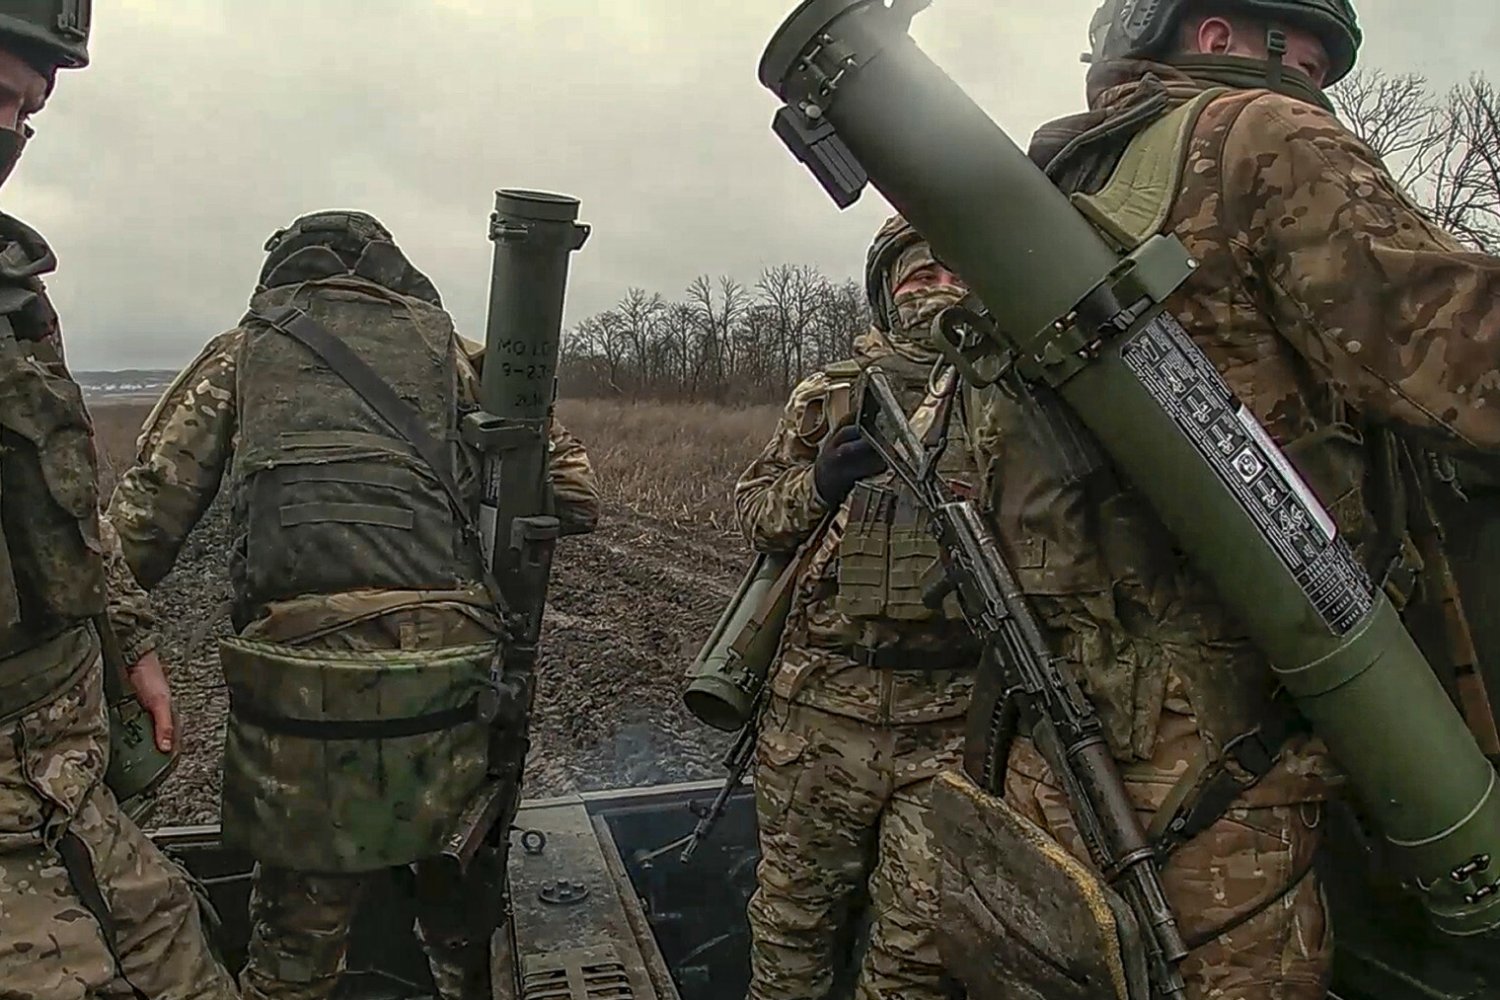 ukraińcy będą odsyłani, aby służyć w wojsku? jeden z krajów nato przerwał milczenie